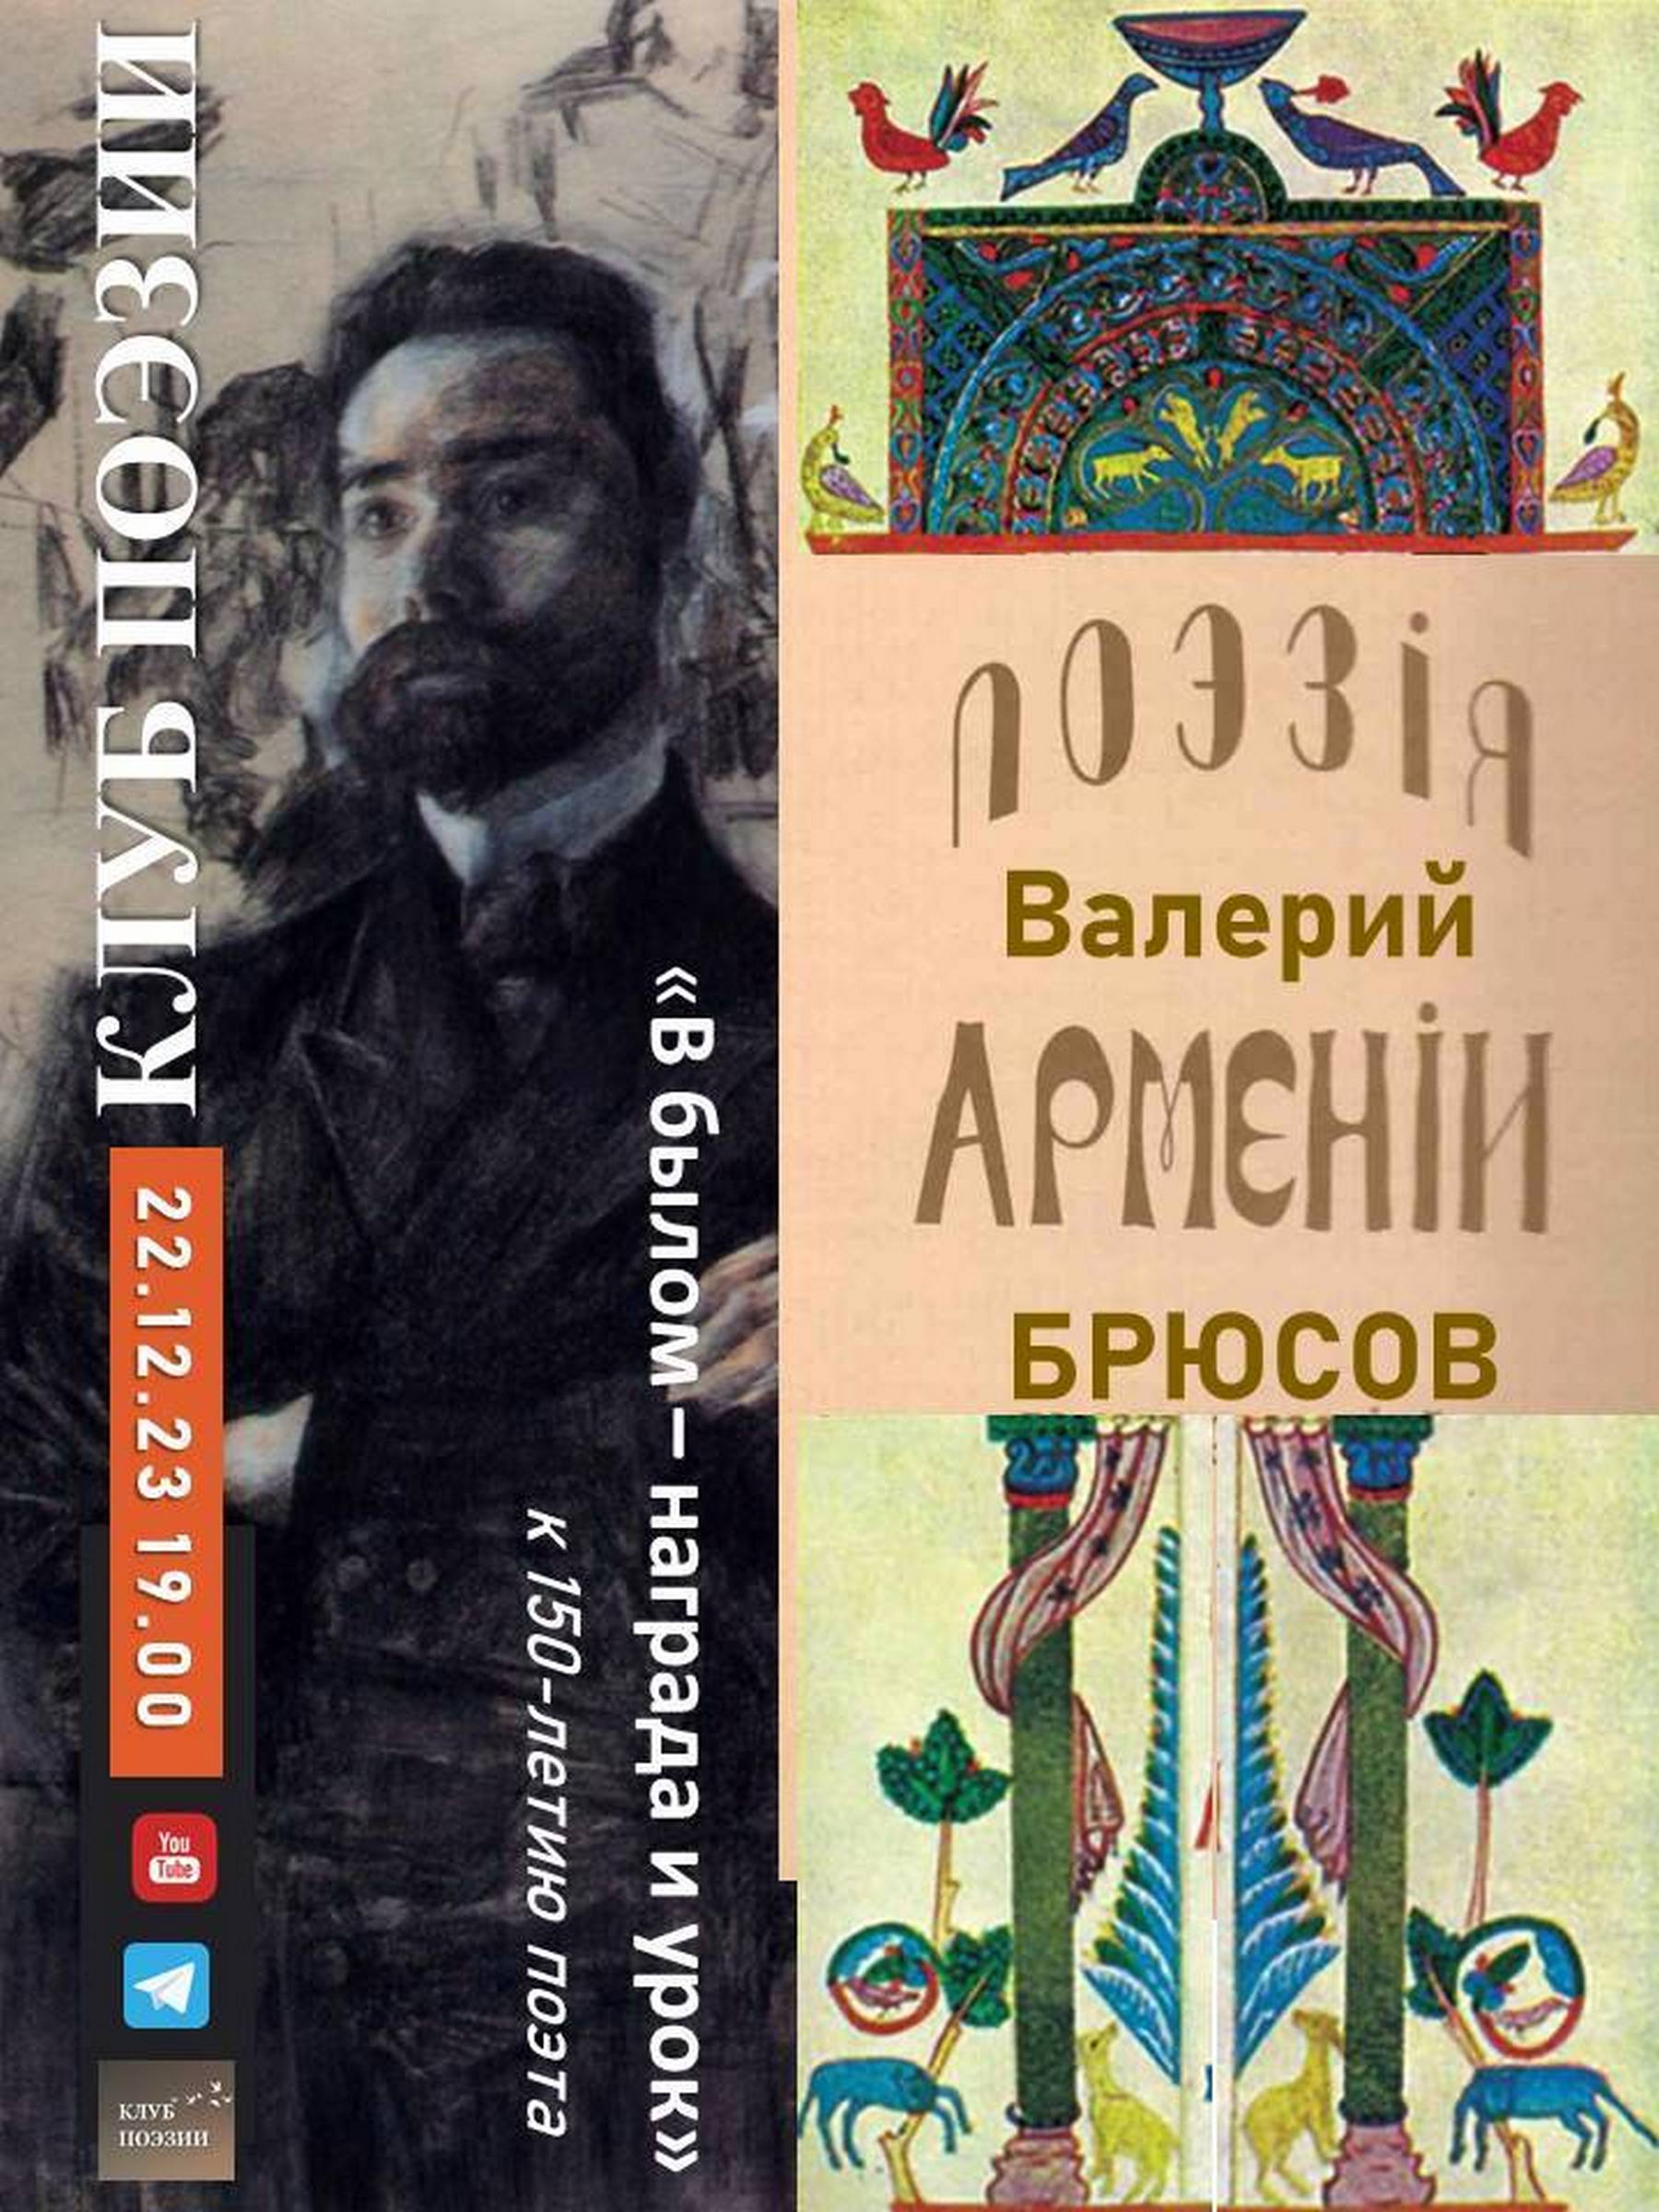 Иллюстрация: Клуб поэзии. Валерий Брюсов и поэзия Армении. «В былом – награда и урок»